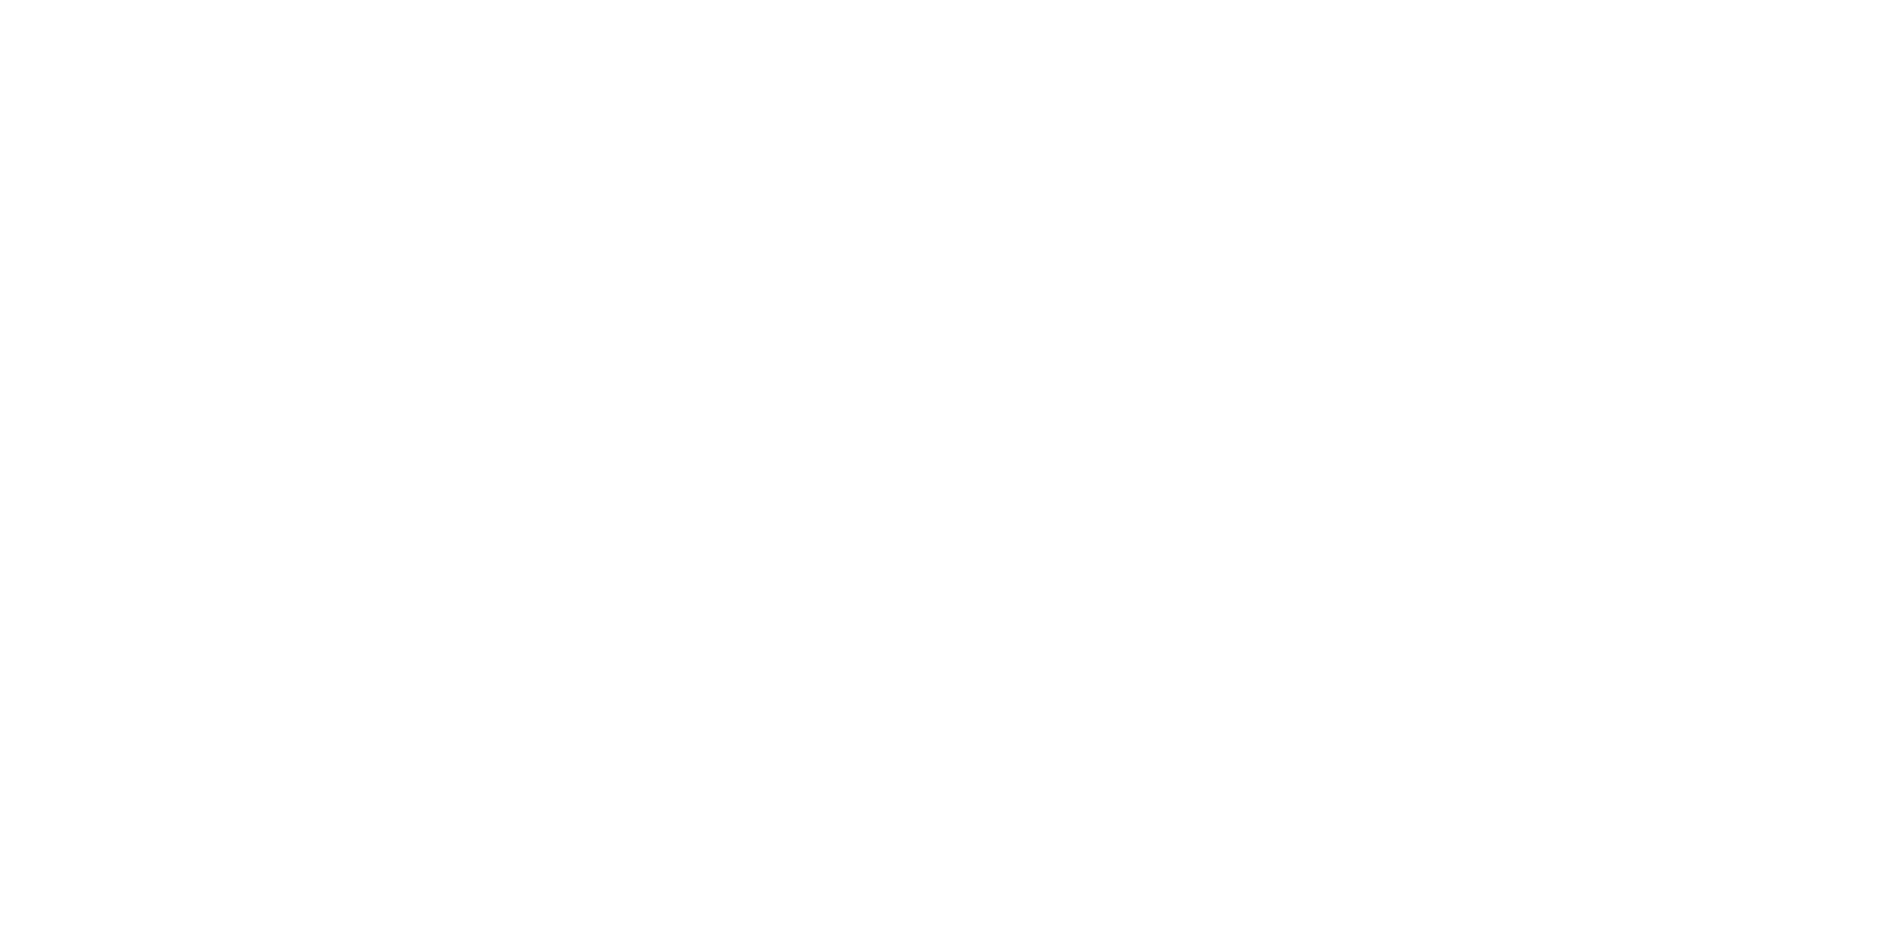 Autotaxatie